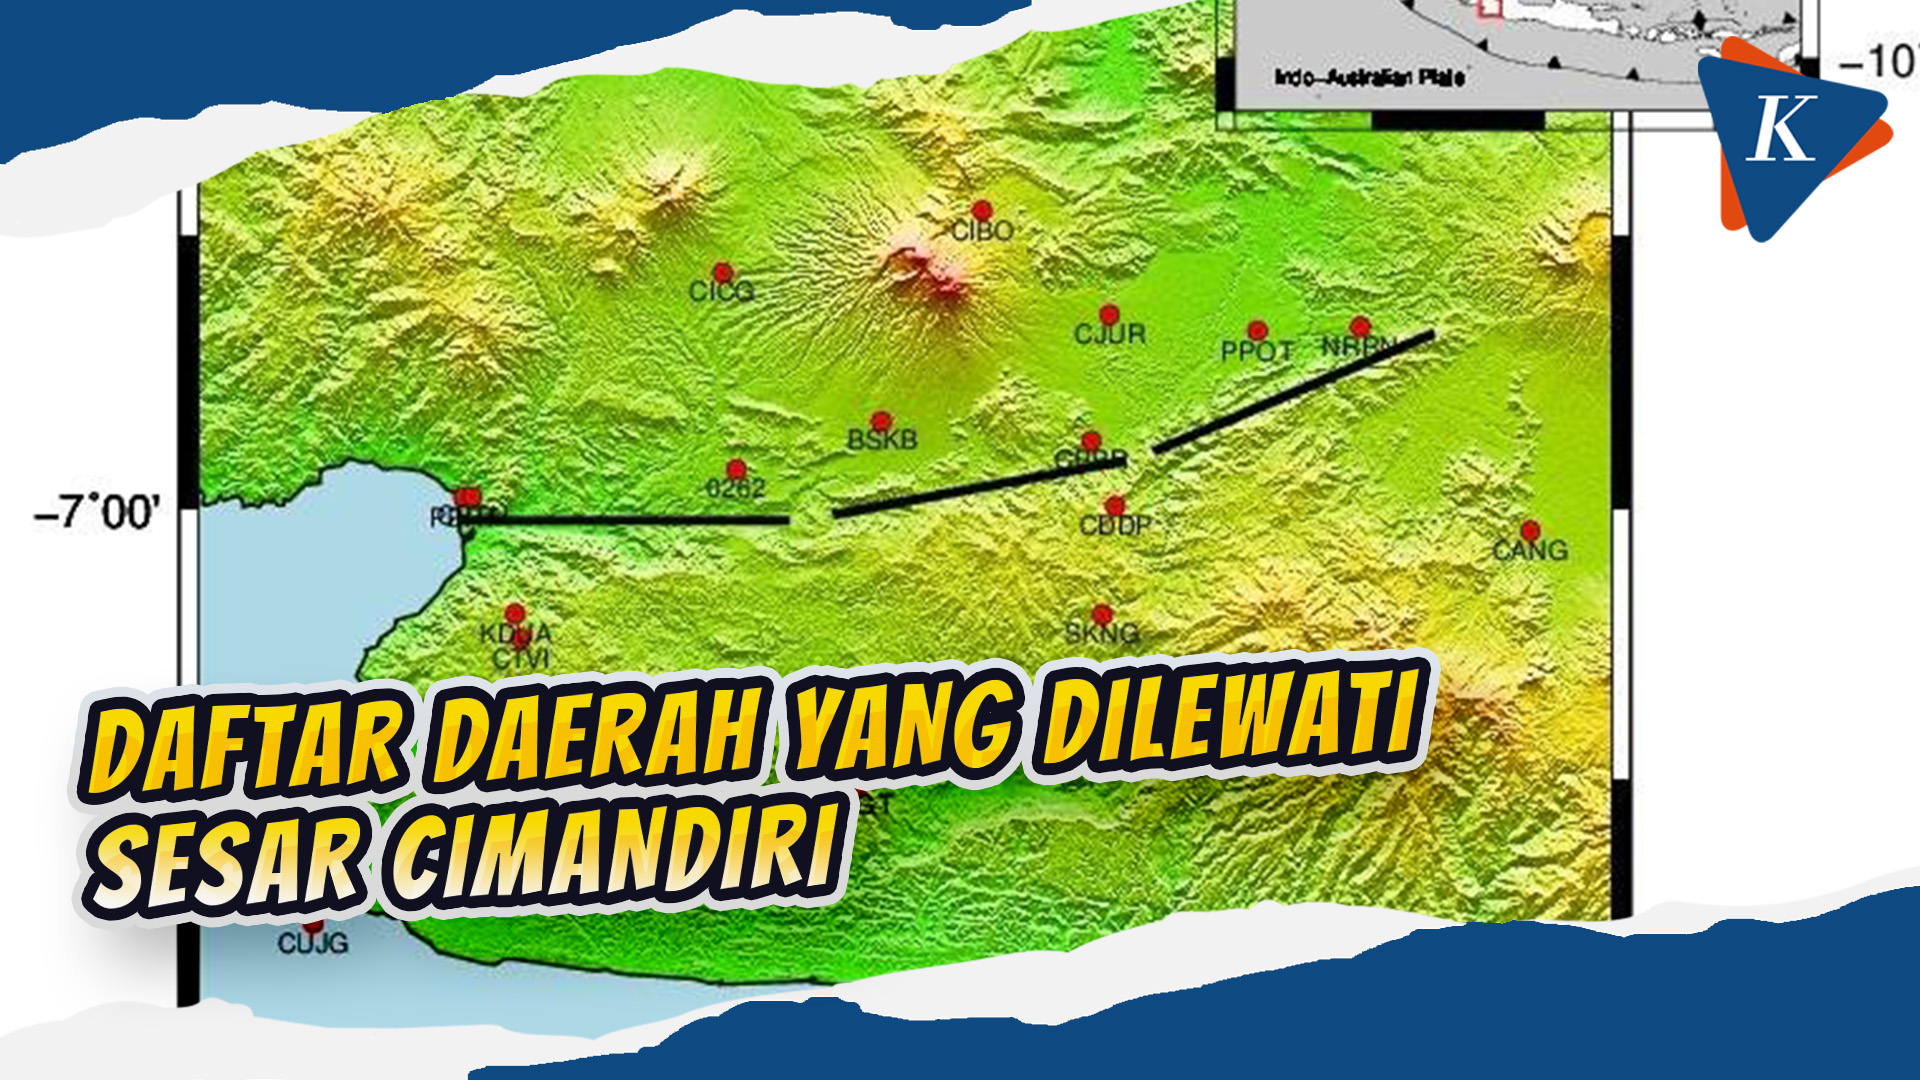 Mengenal Gempa Kerak Dangkal Akibat Sesar Cimandiri di Cianjur